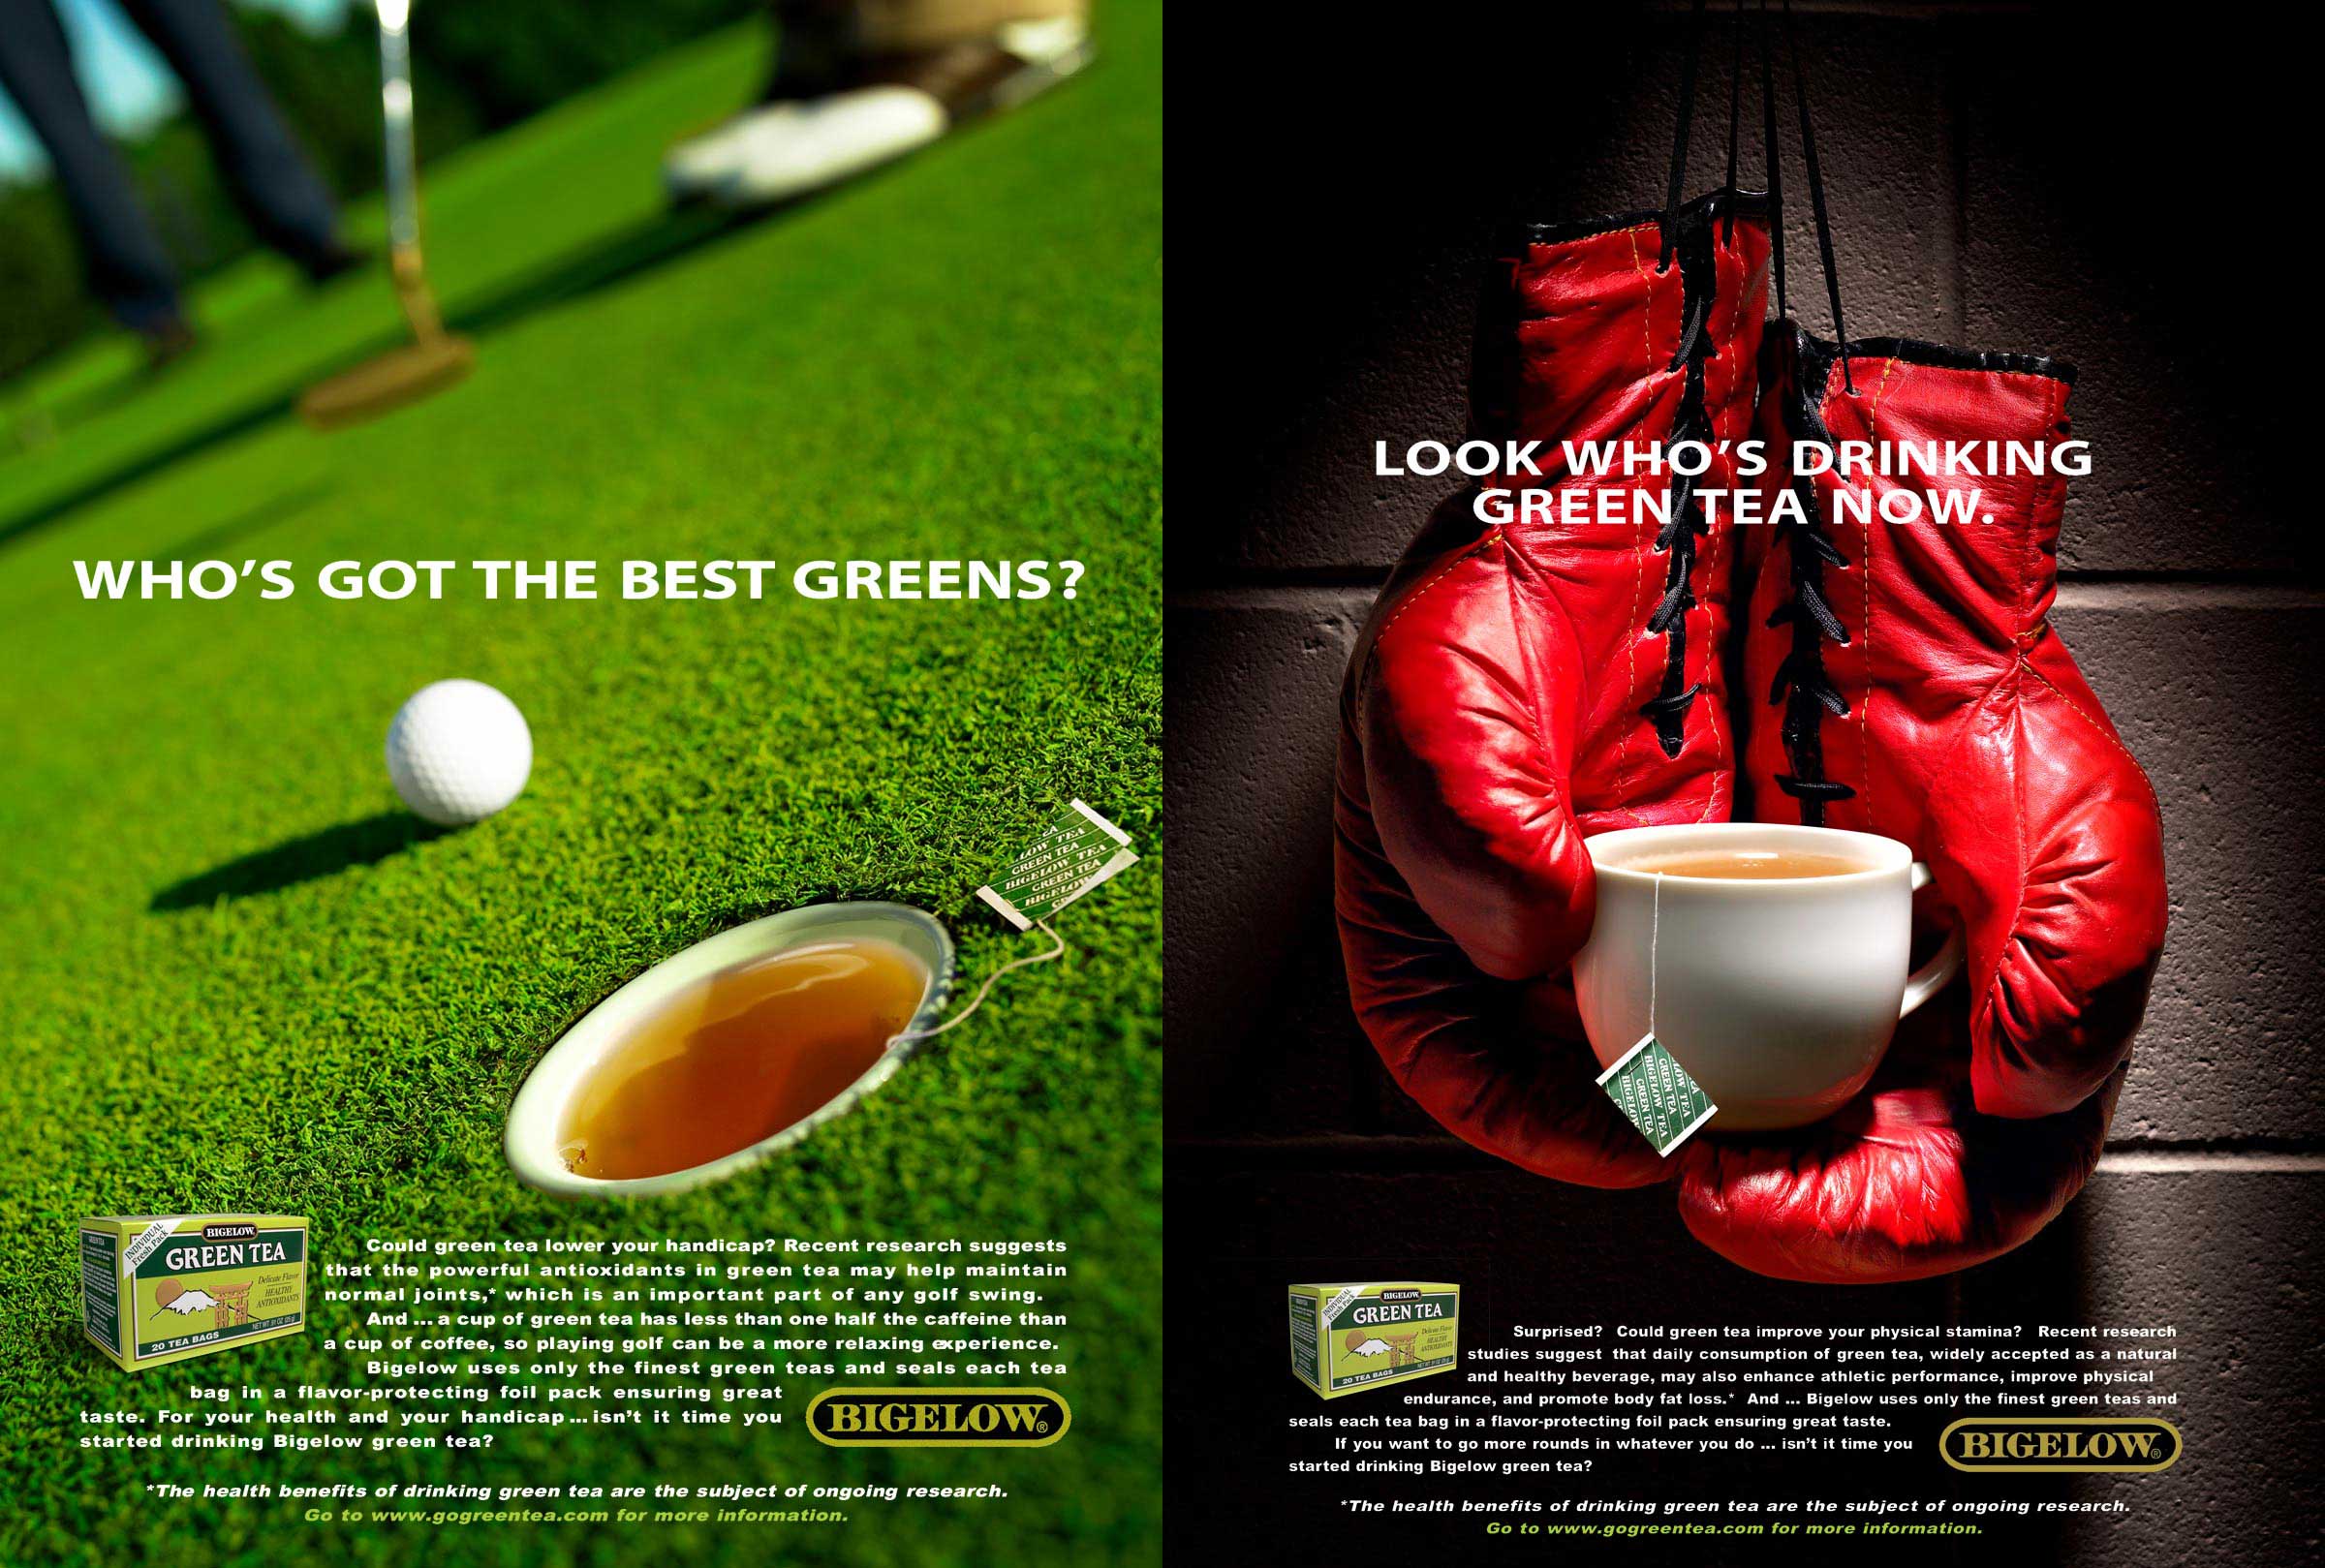 Bigelow Green Tea Campaign